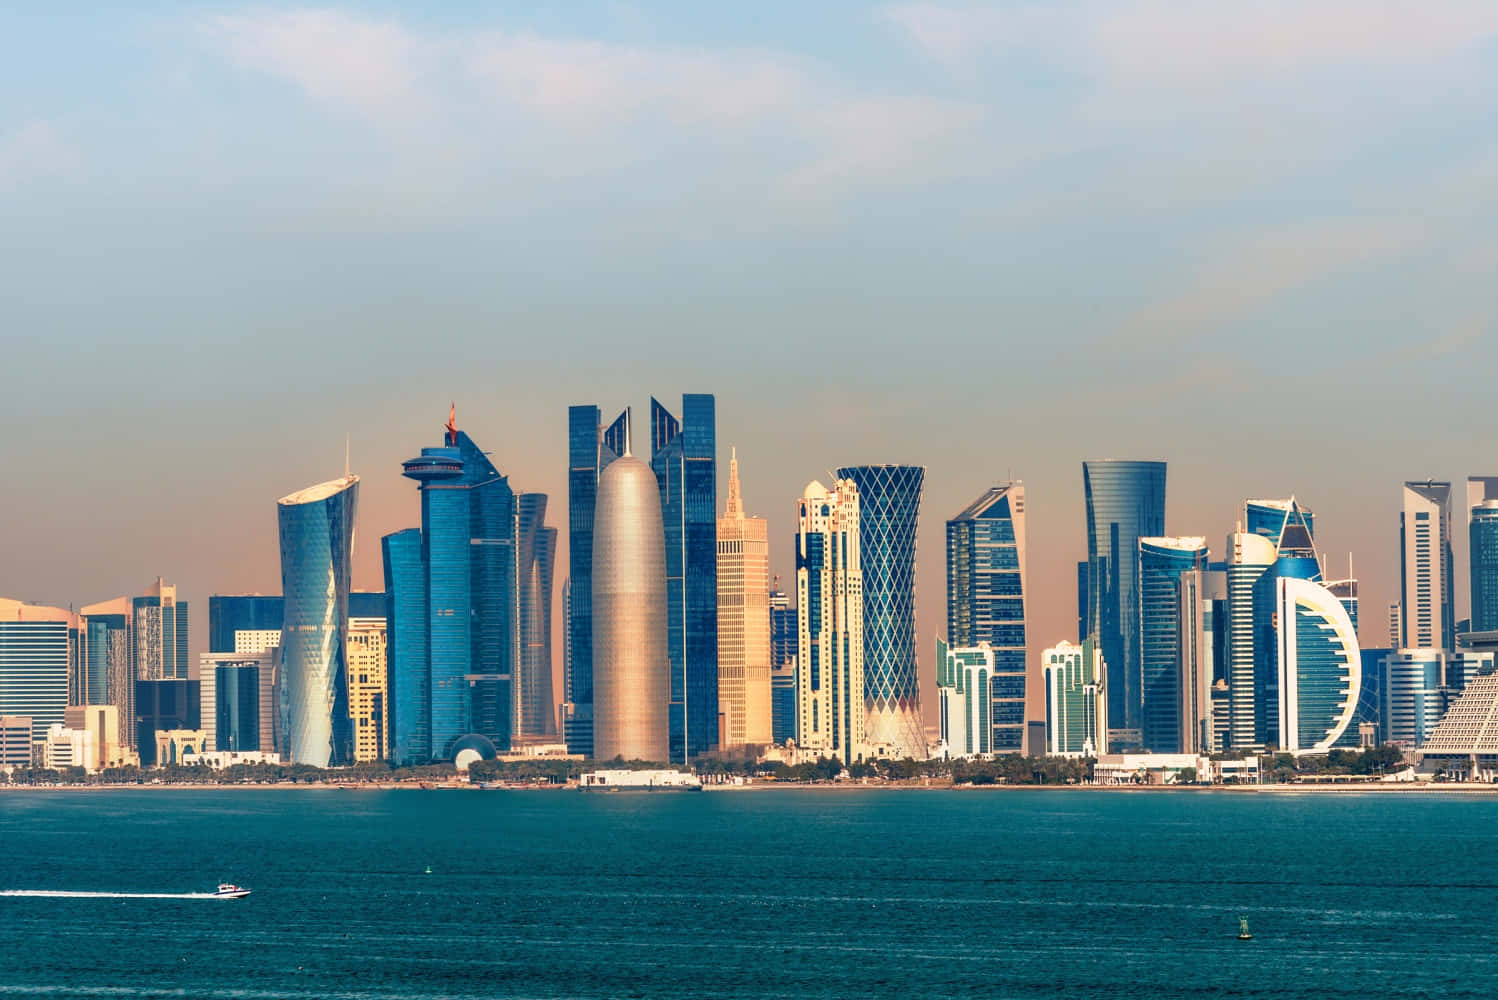 Skylinedi Doha, Qatar.